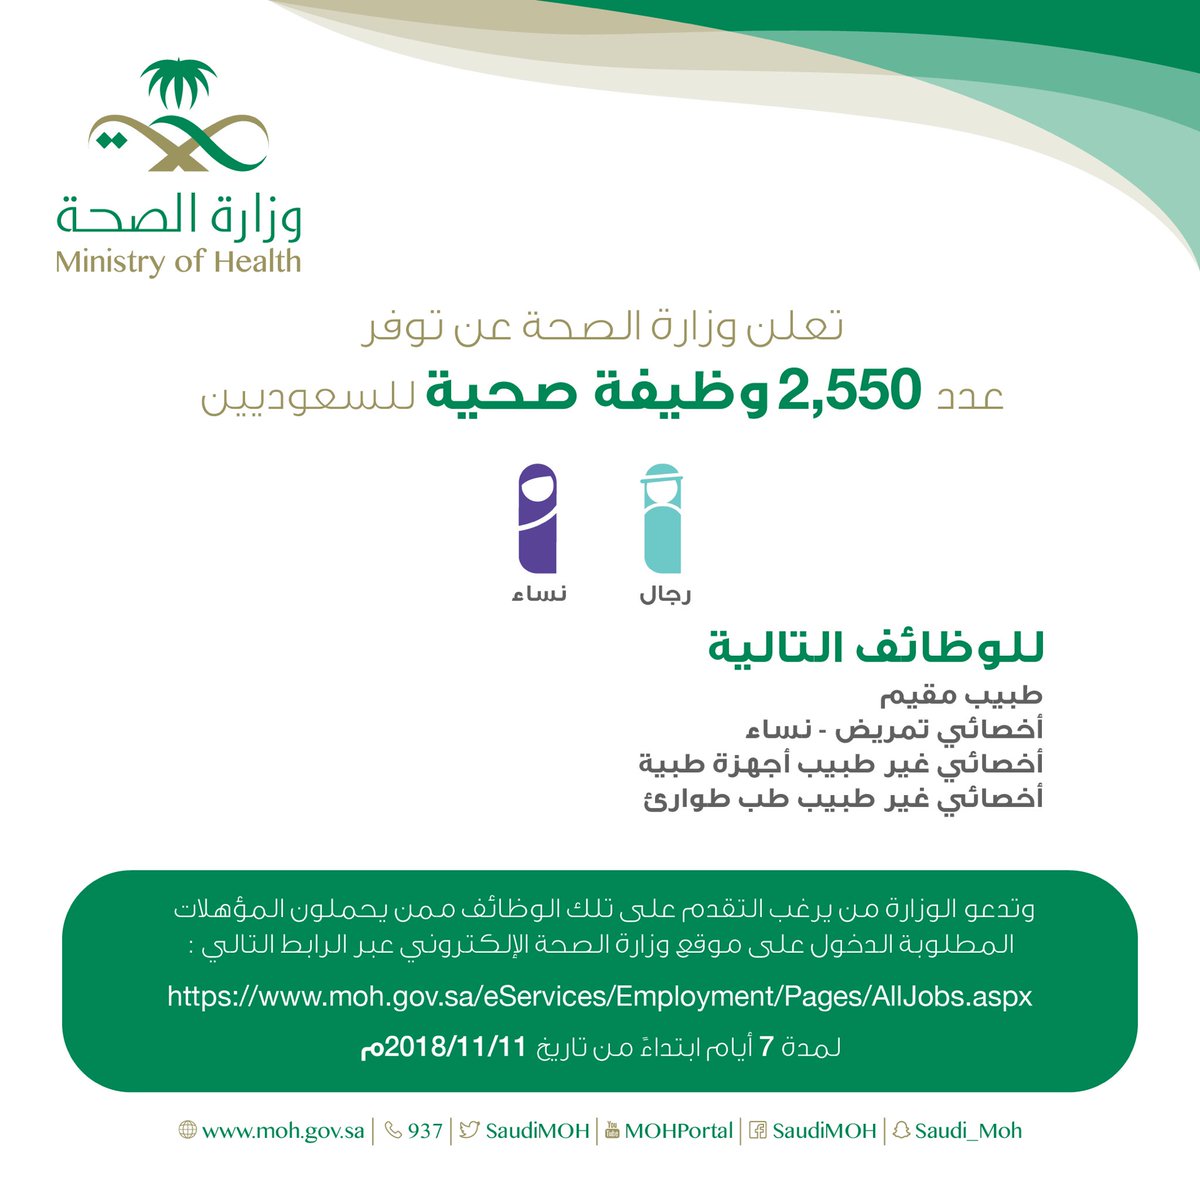 وزارة الصحة تعلن عن 2550 وظيفة للسعوديين